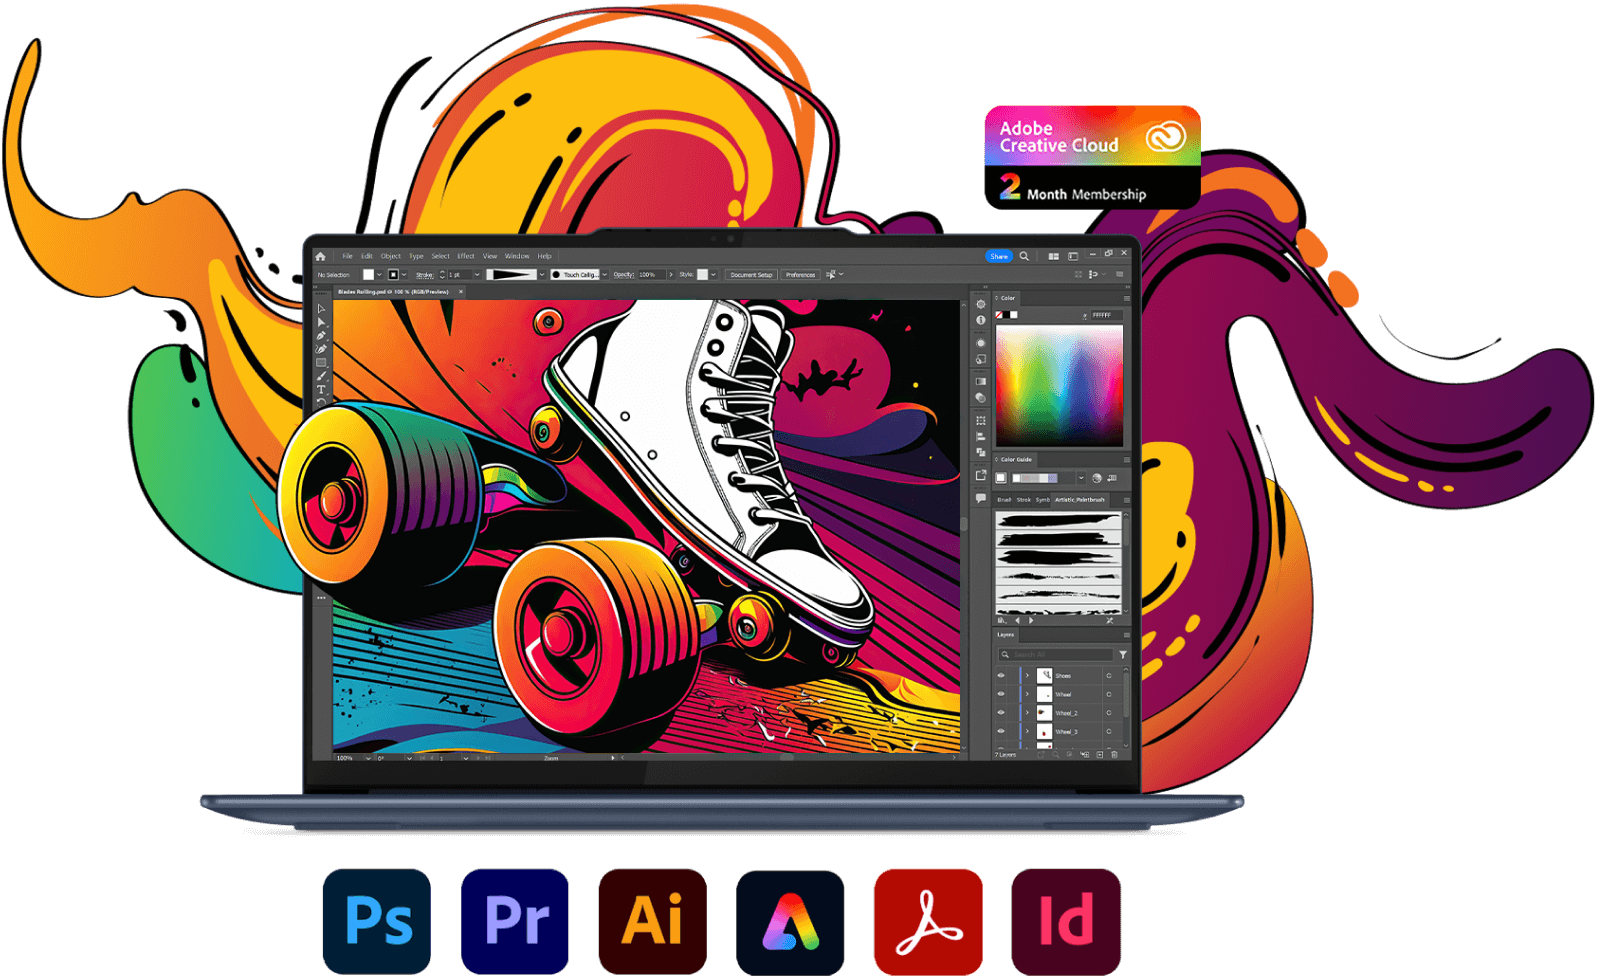 Bärbar Lenovo Yoga-dator framifrån med Photoshop på skärmen samt olika ikoner för Adobe Creative Cloud-program.